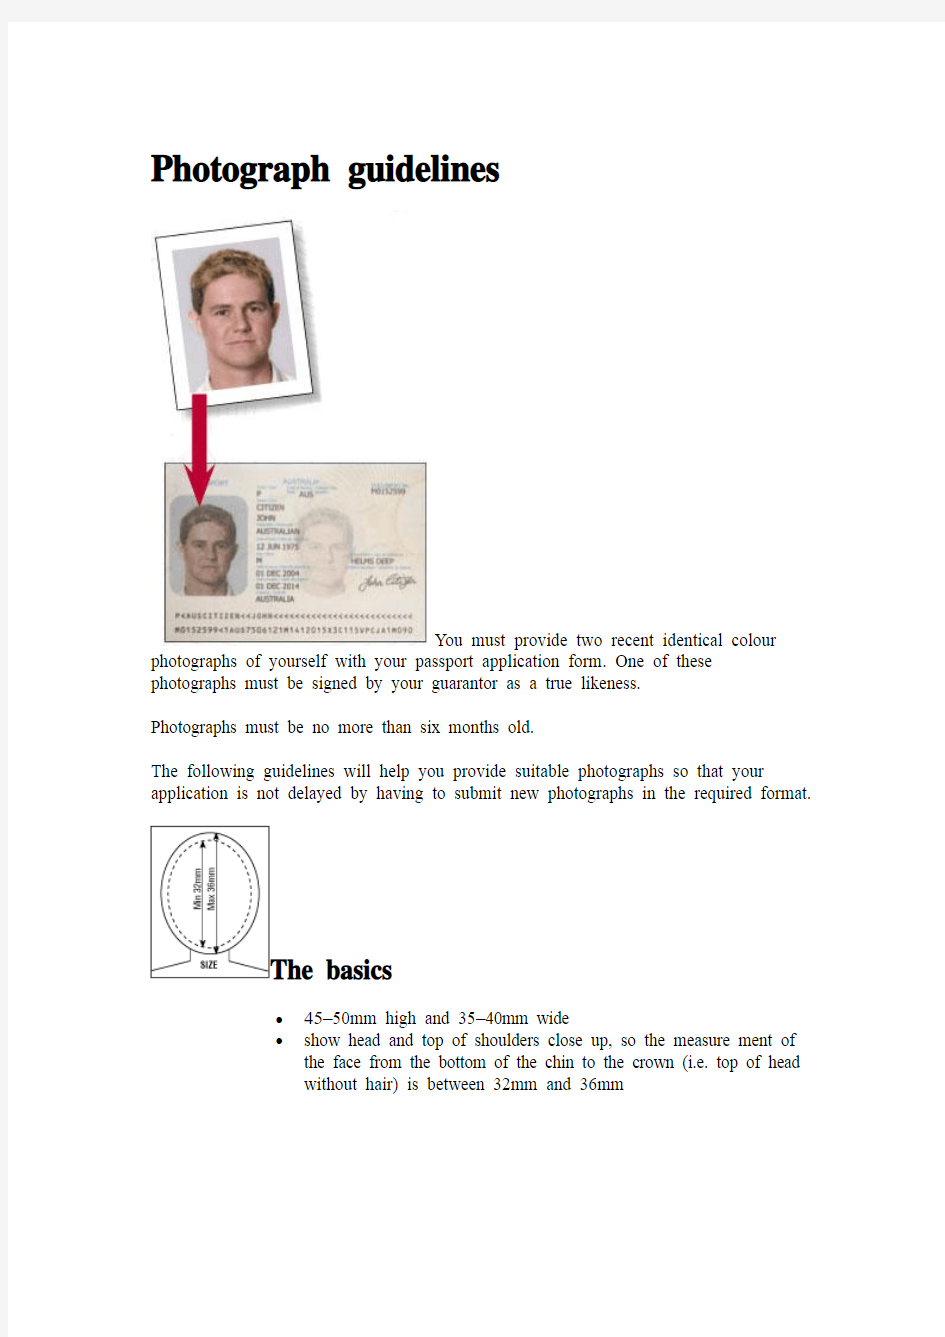 澳洲护照照片规格 Photograph guidelines